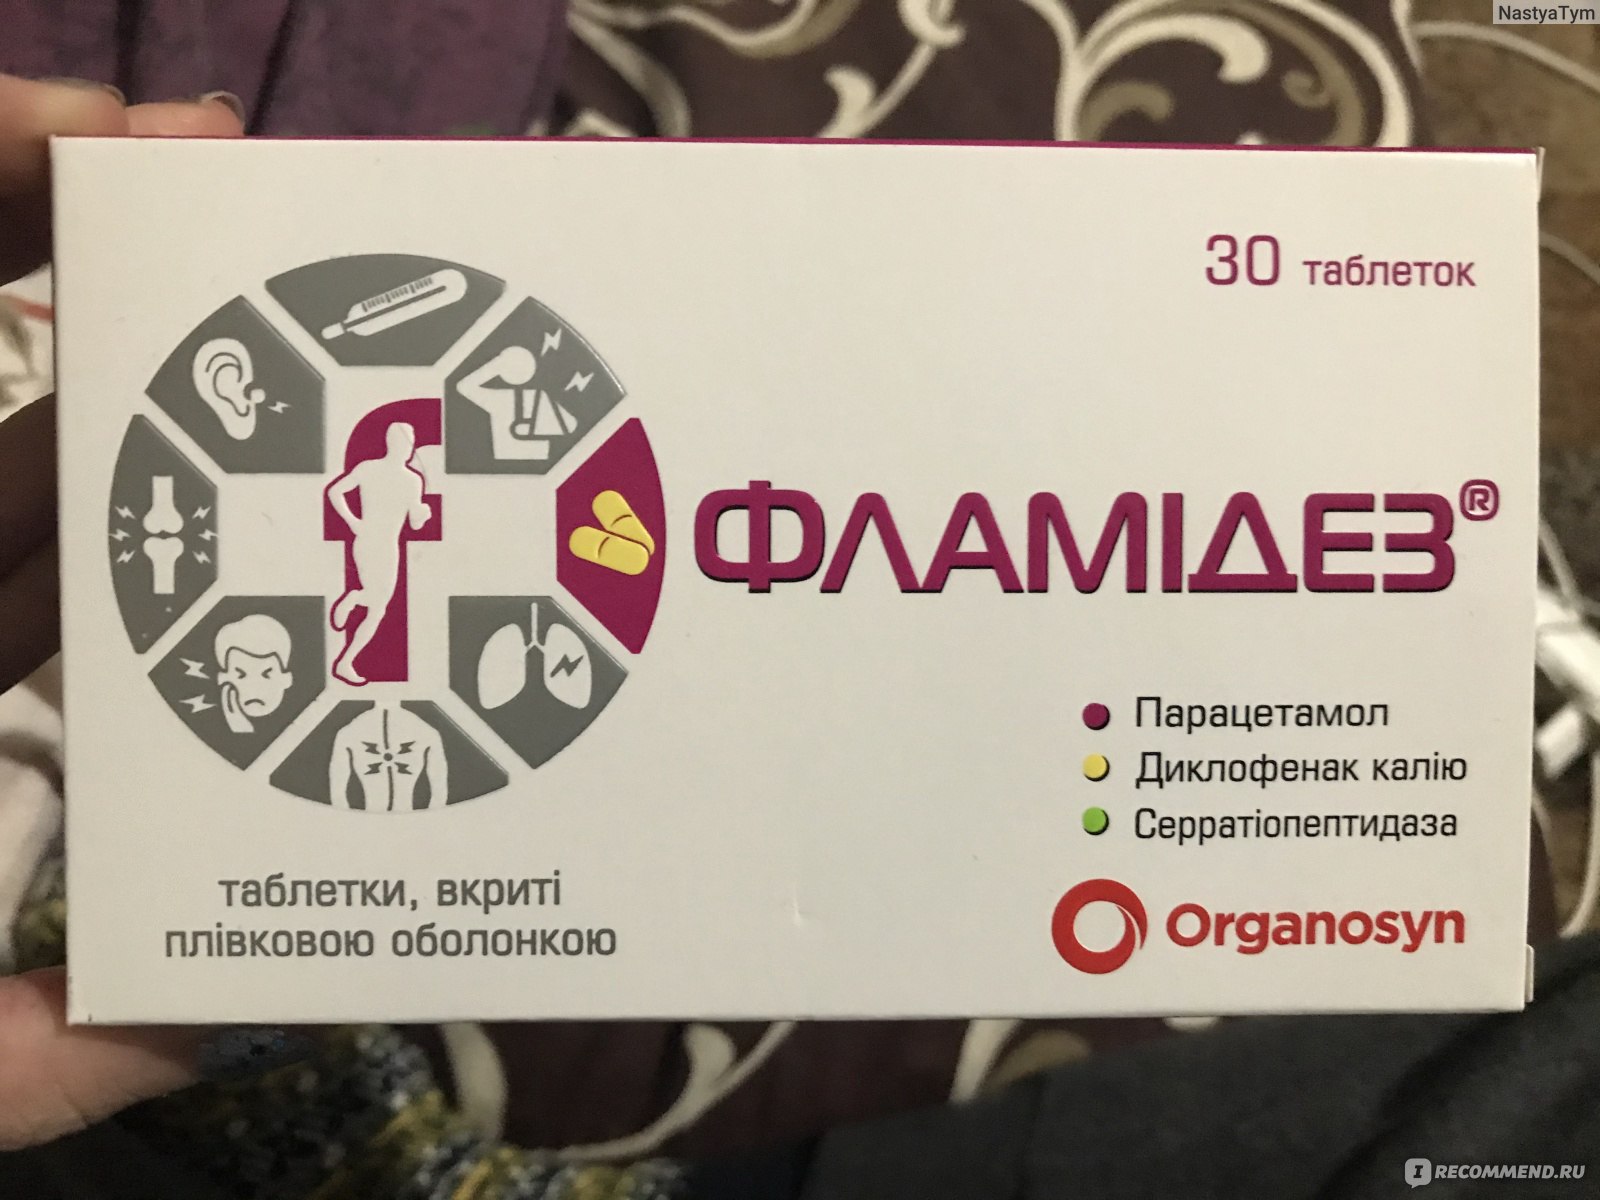 Противовоспалительное средство Organosyn таблетки Фламидез - «Мощный .